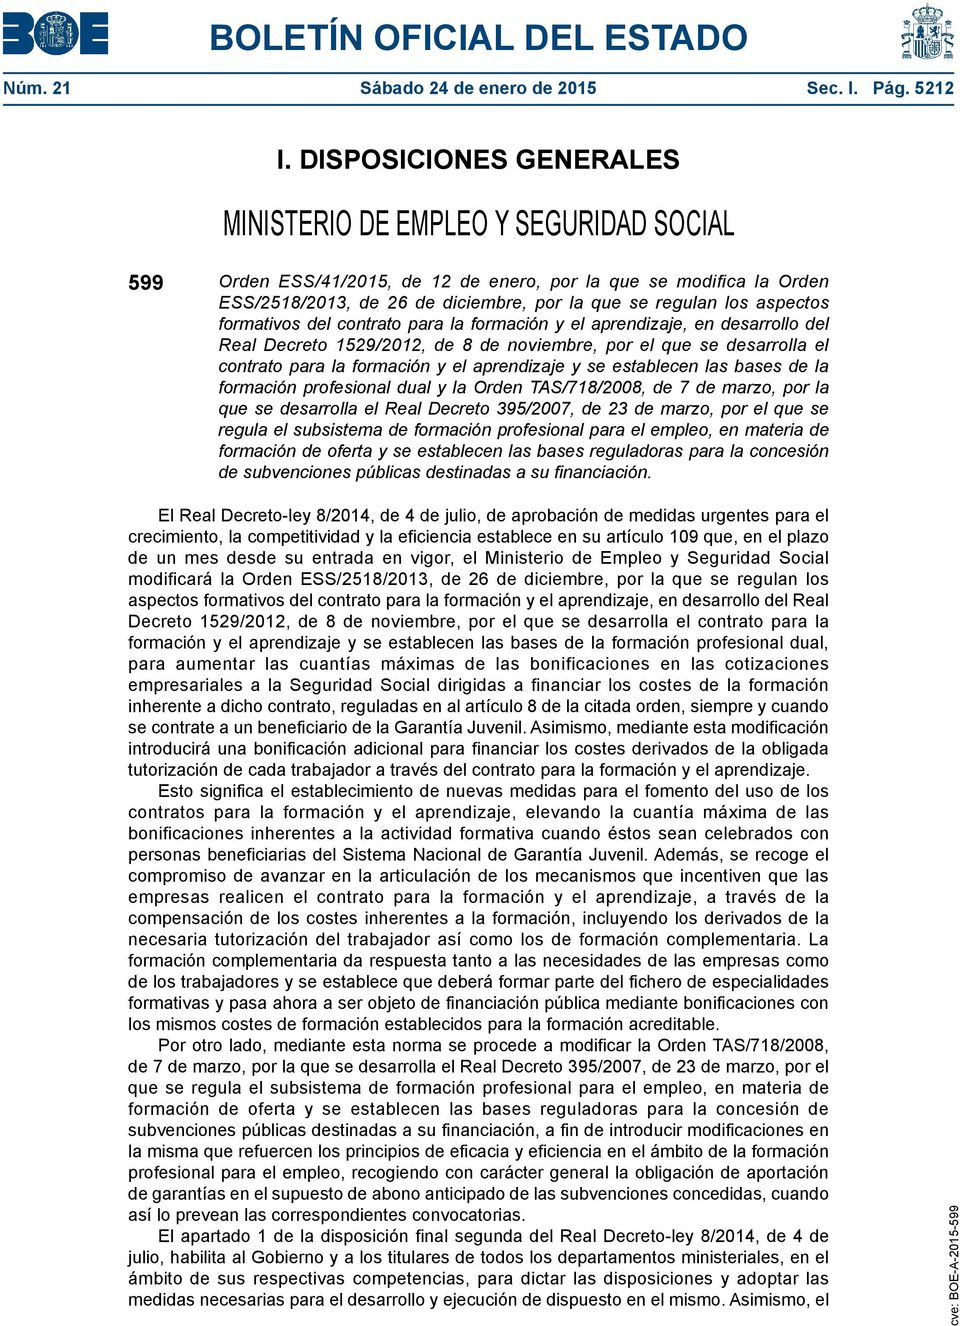 aspectos formativos del contrato para la formación y el aprendizaje, en desarrollo del Real Decreto 1529/2012, de 8 de noviembre, por el que se desarrolla el contrato para la formación y el